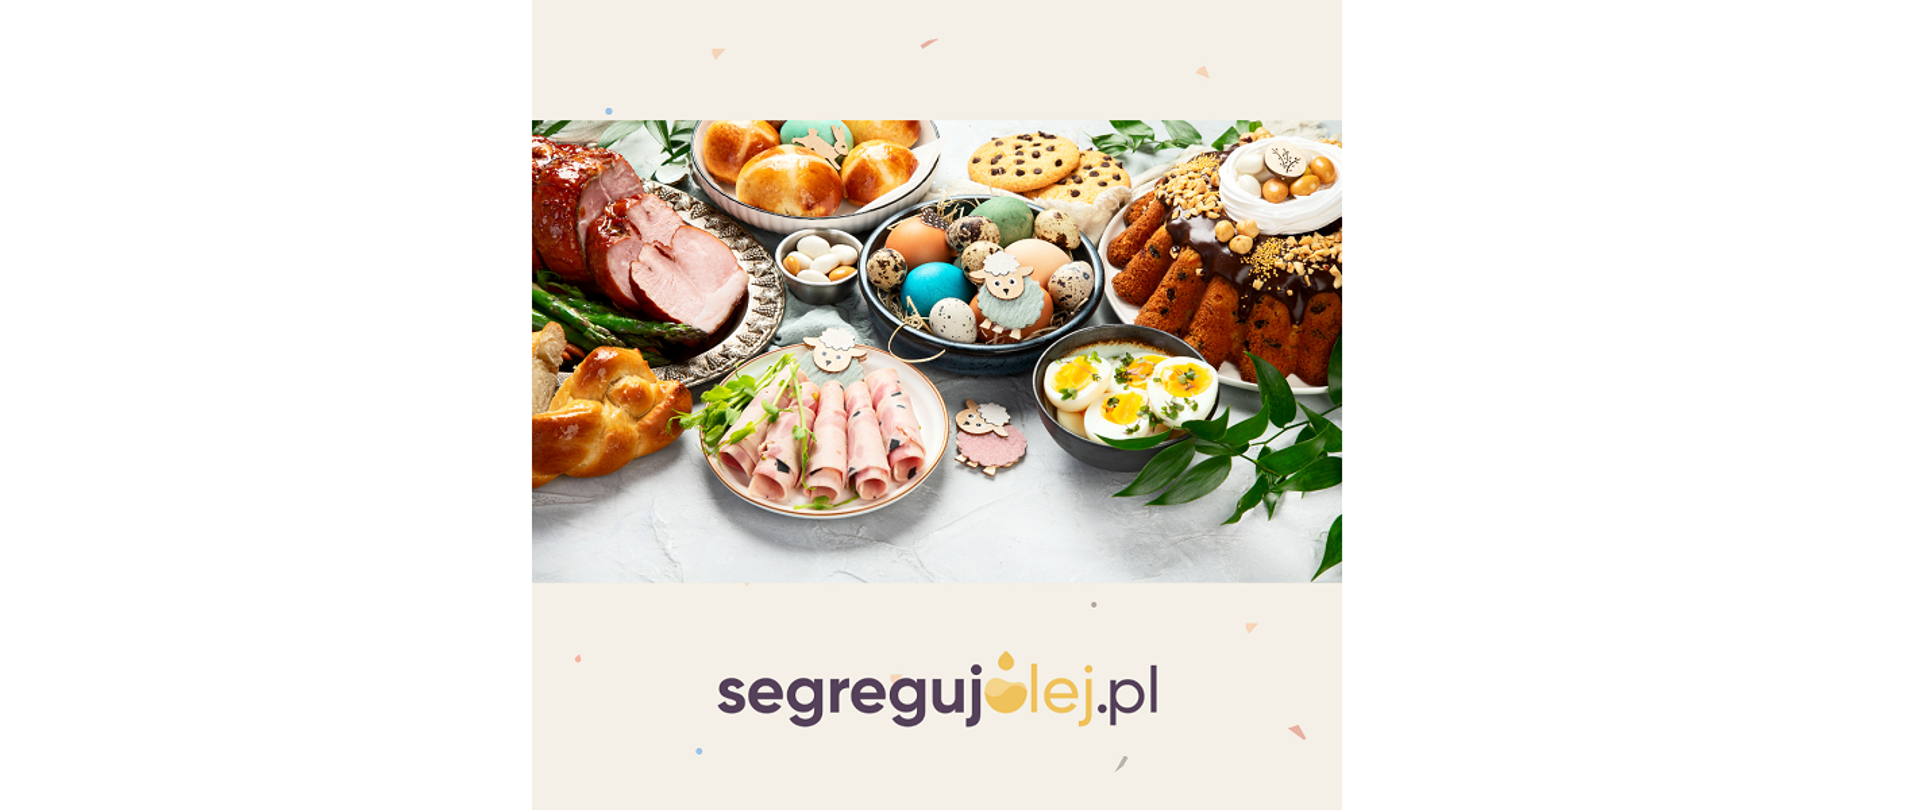 Plakat segregujolej.pl. Widoczne: różne potrawy (wędliny, ciasta i jajka) na suto zastawionym świątecznym stole